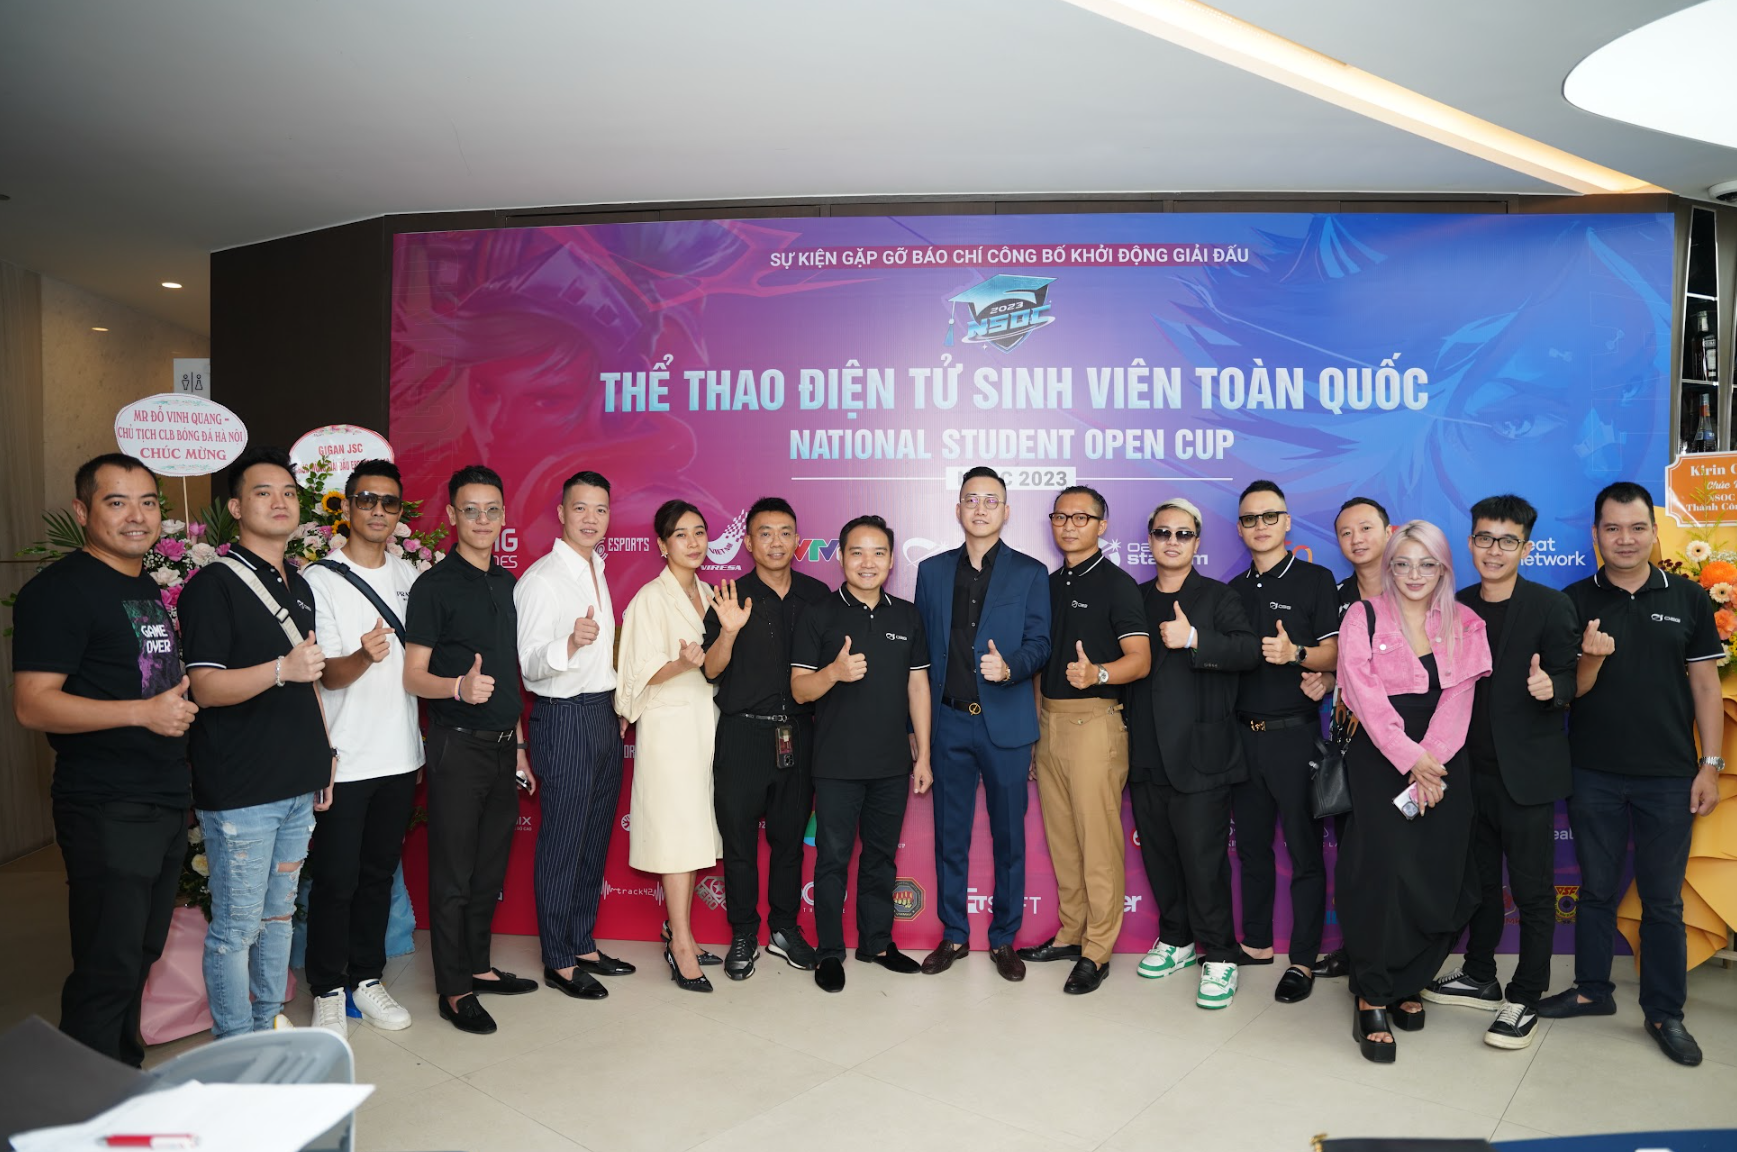 Sangtraan, Theanh96 góp mặt tại Offline chung kết miền của National Student Open Cup 2023 - Sự kiện Esports có quy mô tới 1000 người - Ảnh 1.